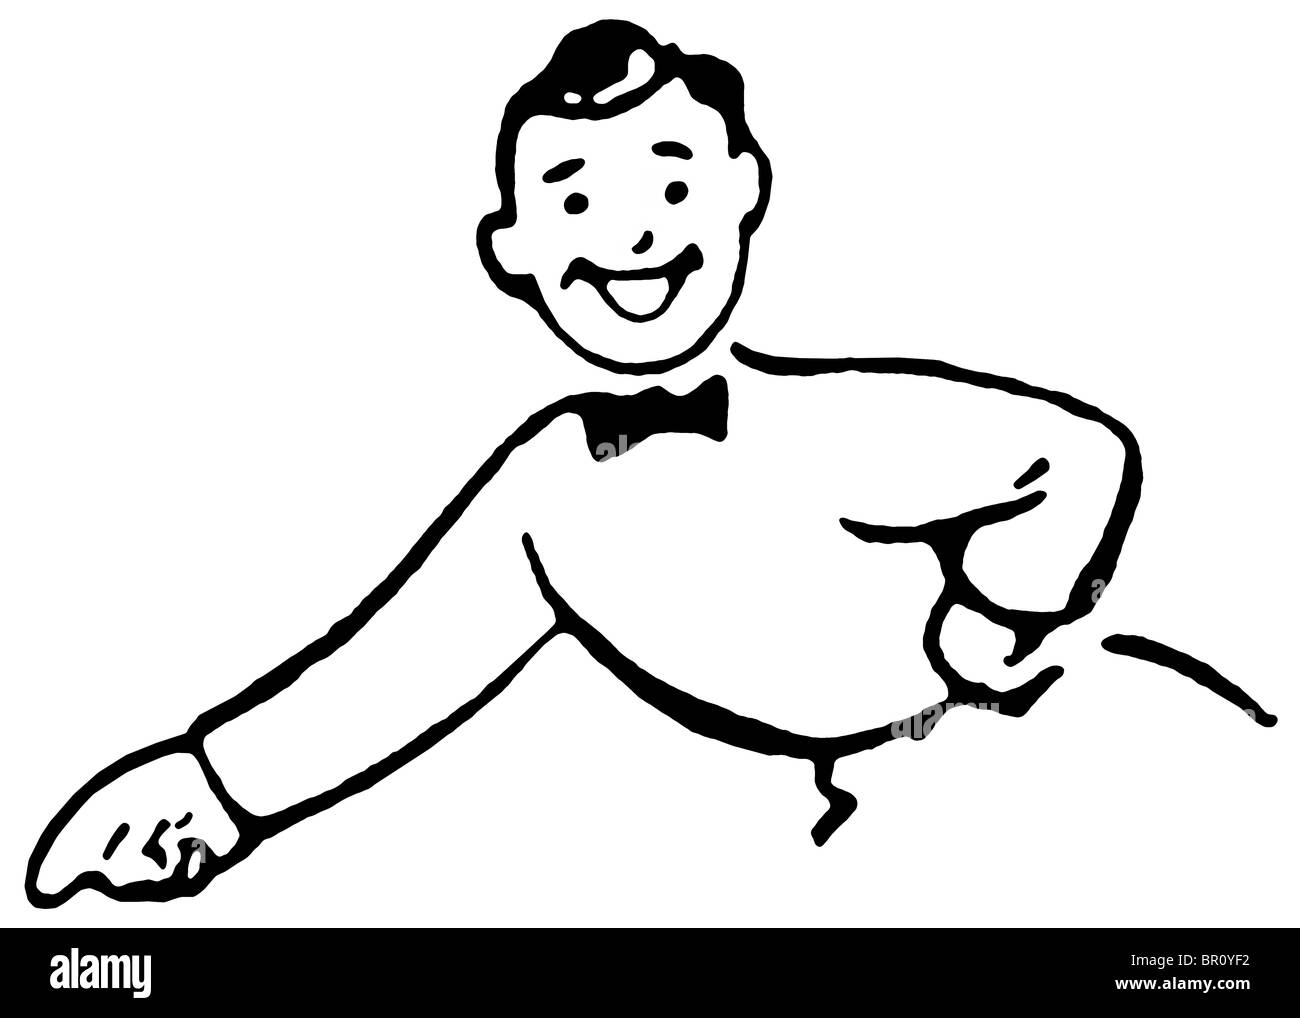 Eine schwarz-weiß Version von einem Cartoon-Stil, Zeichnung von einem glücklich aussehender Mann gekleidet in einer Suite mit Bowtie zeigte mit dem finger Stockfoto